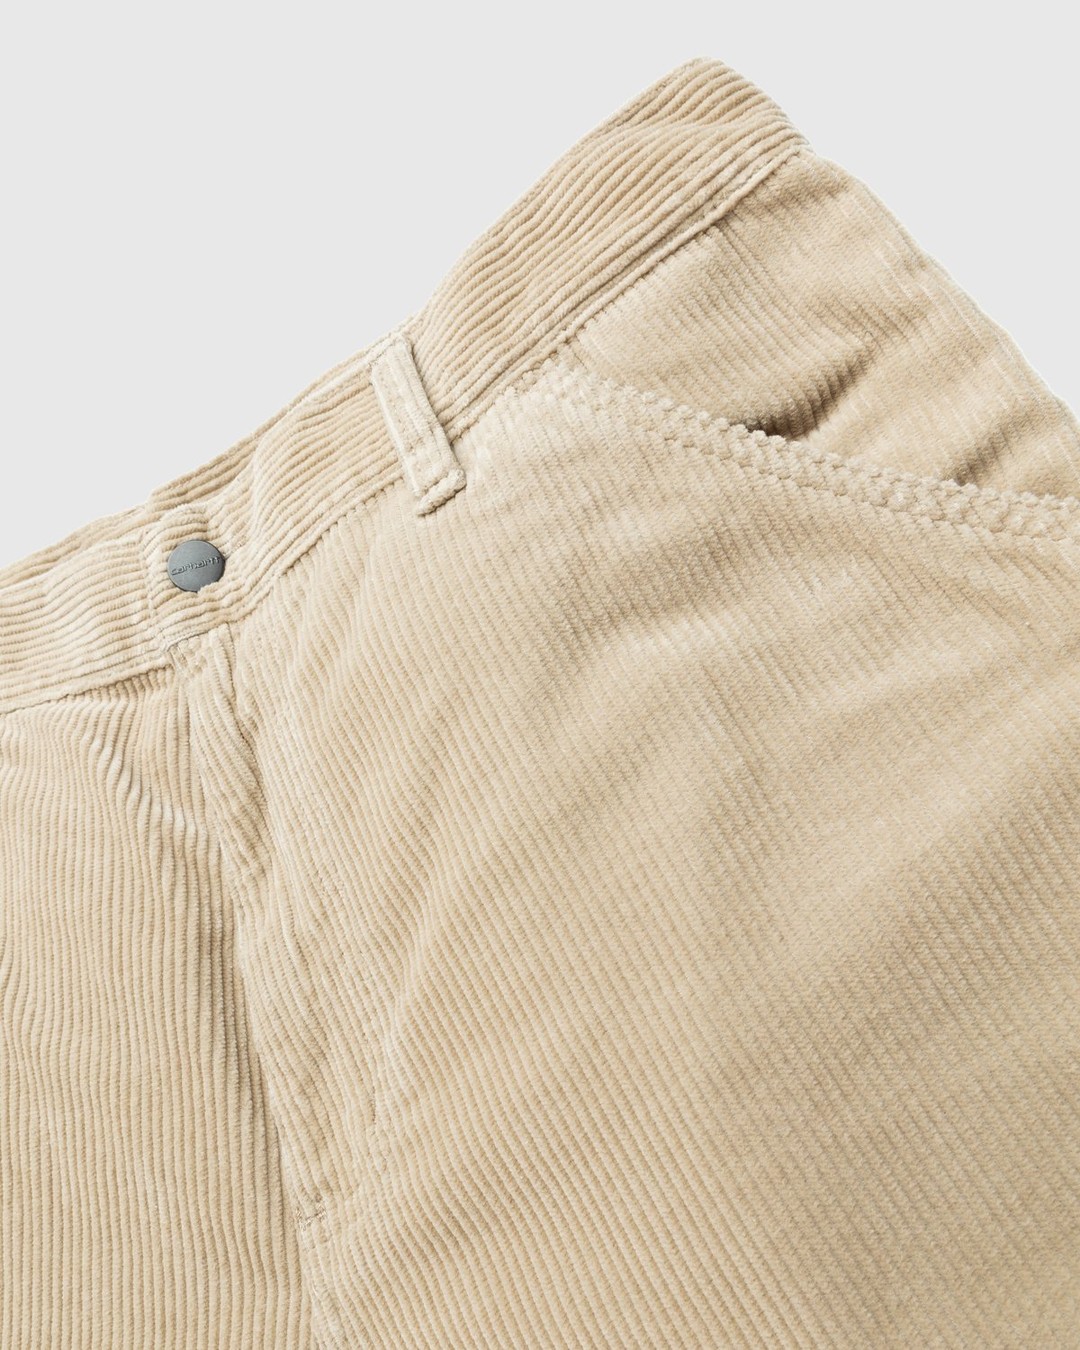 Carhartt WIP – Ruck Single Knee Pant Beige - Trousers - Brown - Image 5